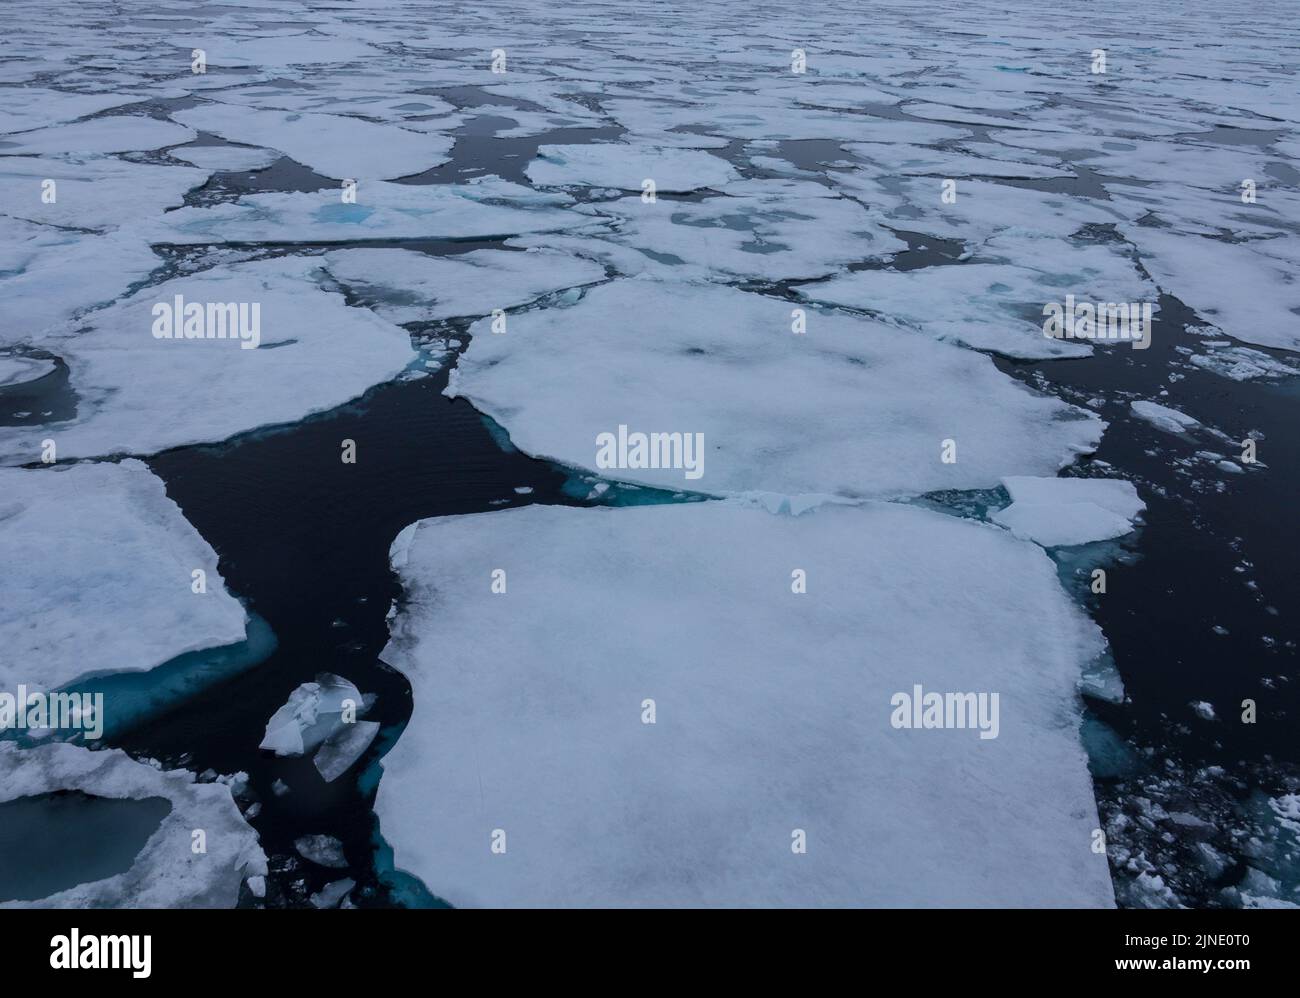 Pack de glace flottant dans l'océan arctique. La glace glaciaire bleue recouverte de neige est une nature sauvage préservée. Svalbard, Norvège Banque D'Images